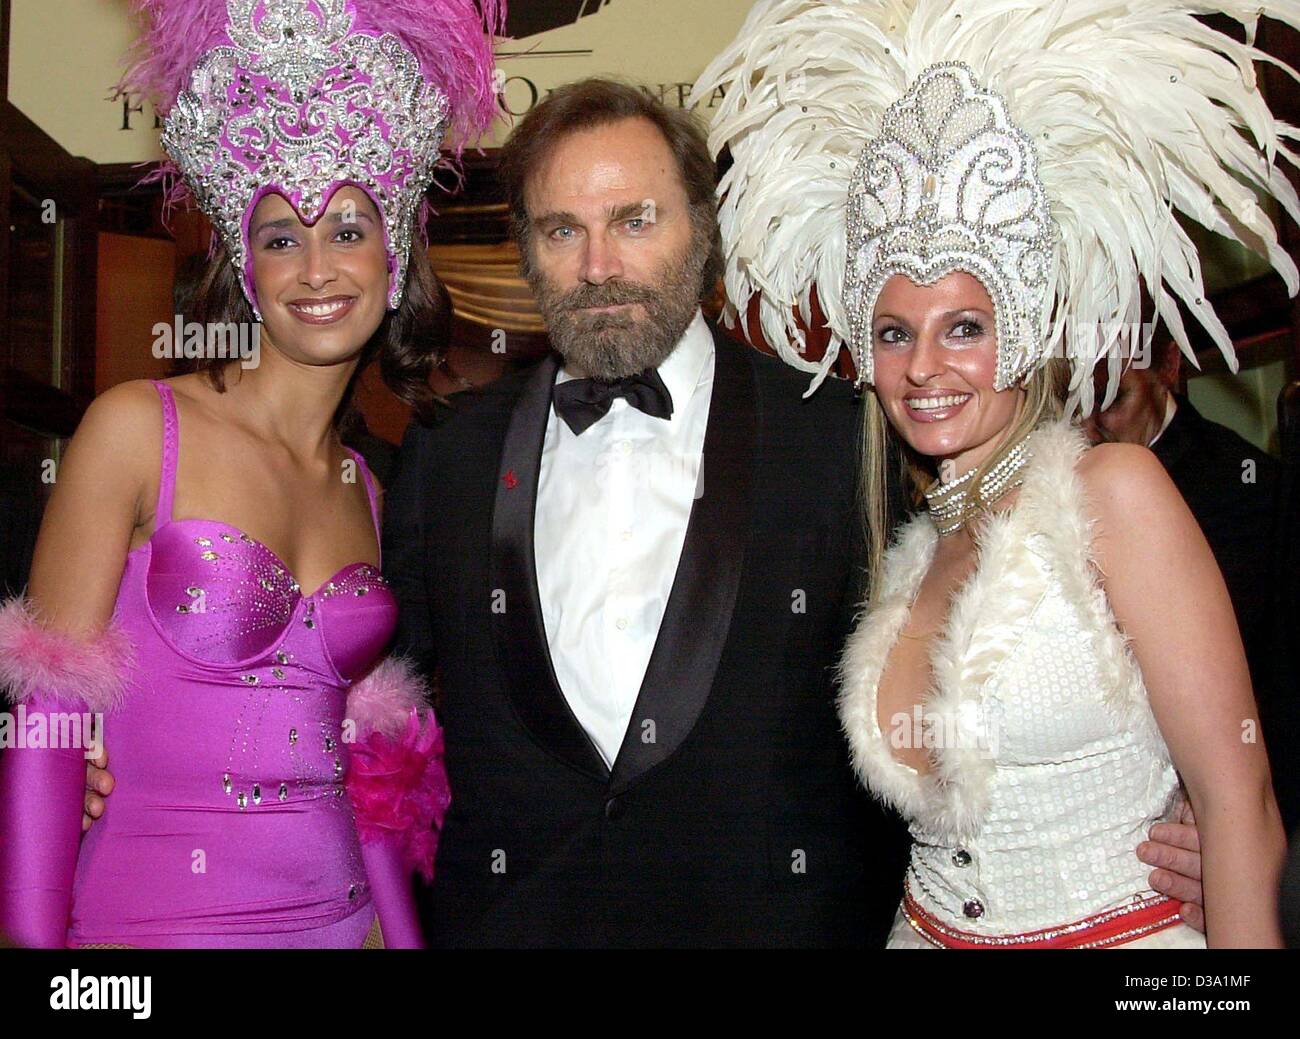 (Afp) - L'acteur italien Franco Nero est accompagné dans la salle de bal par deux hôtesses au 20e Bal de l'Opéra de Francfort, 23 février 2002. Néron était un des invités internationaux. Banque D'Images